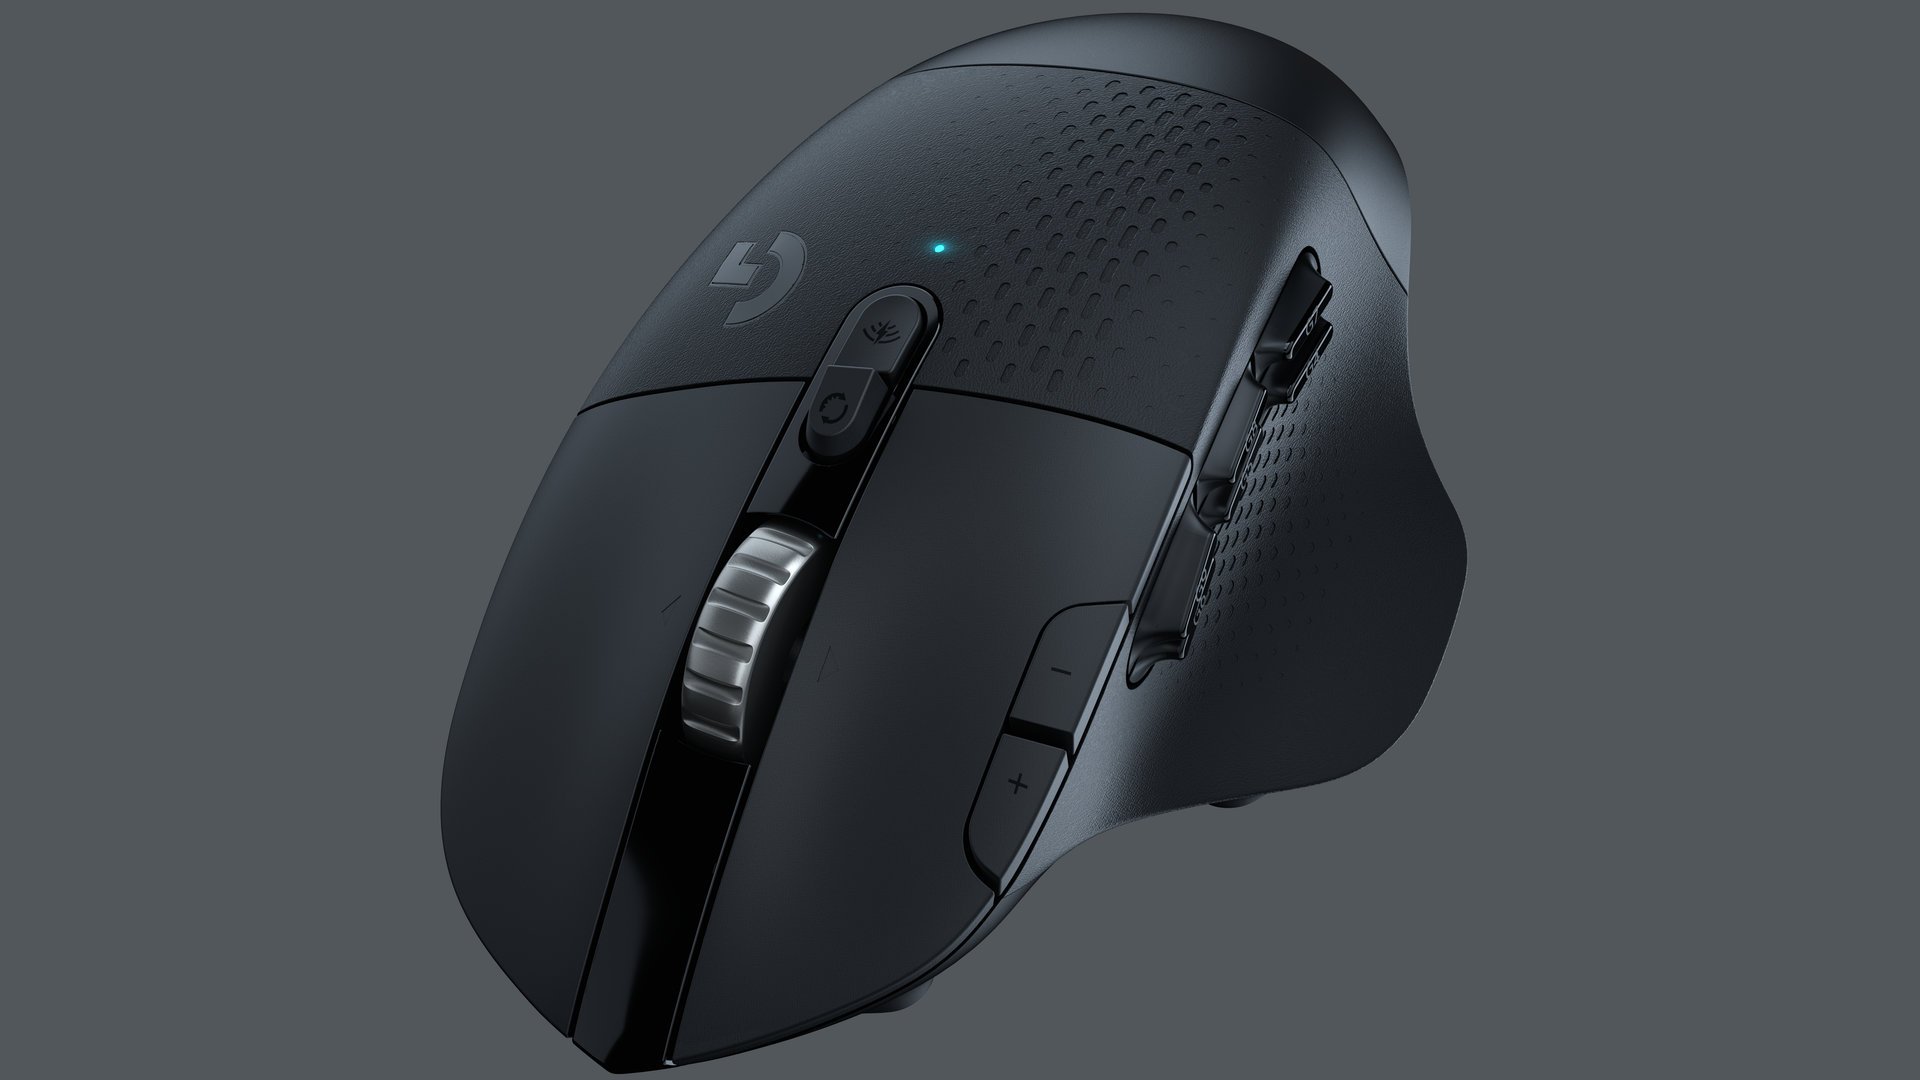 Image 10 : G604 Lightspeed : la nouvelle souris gaming sans fil de Logitech pour les MMO